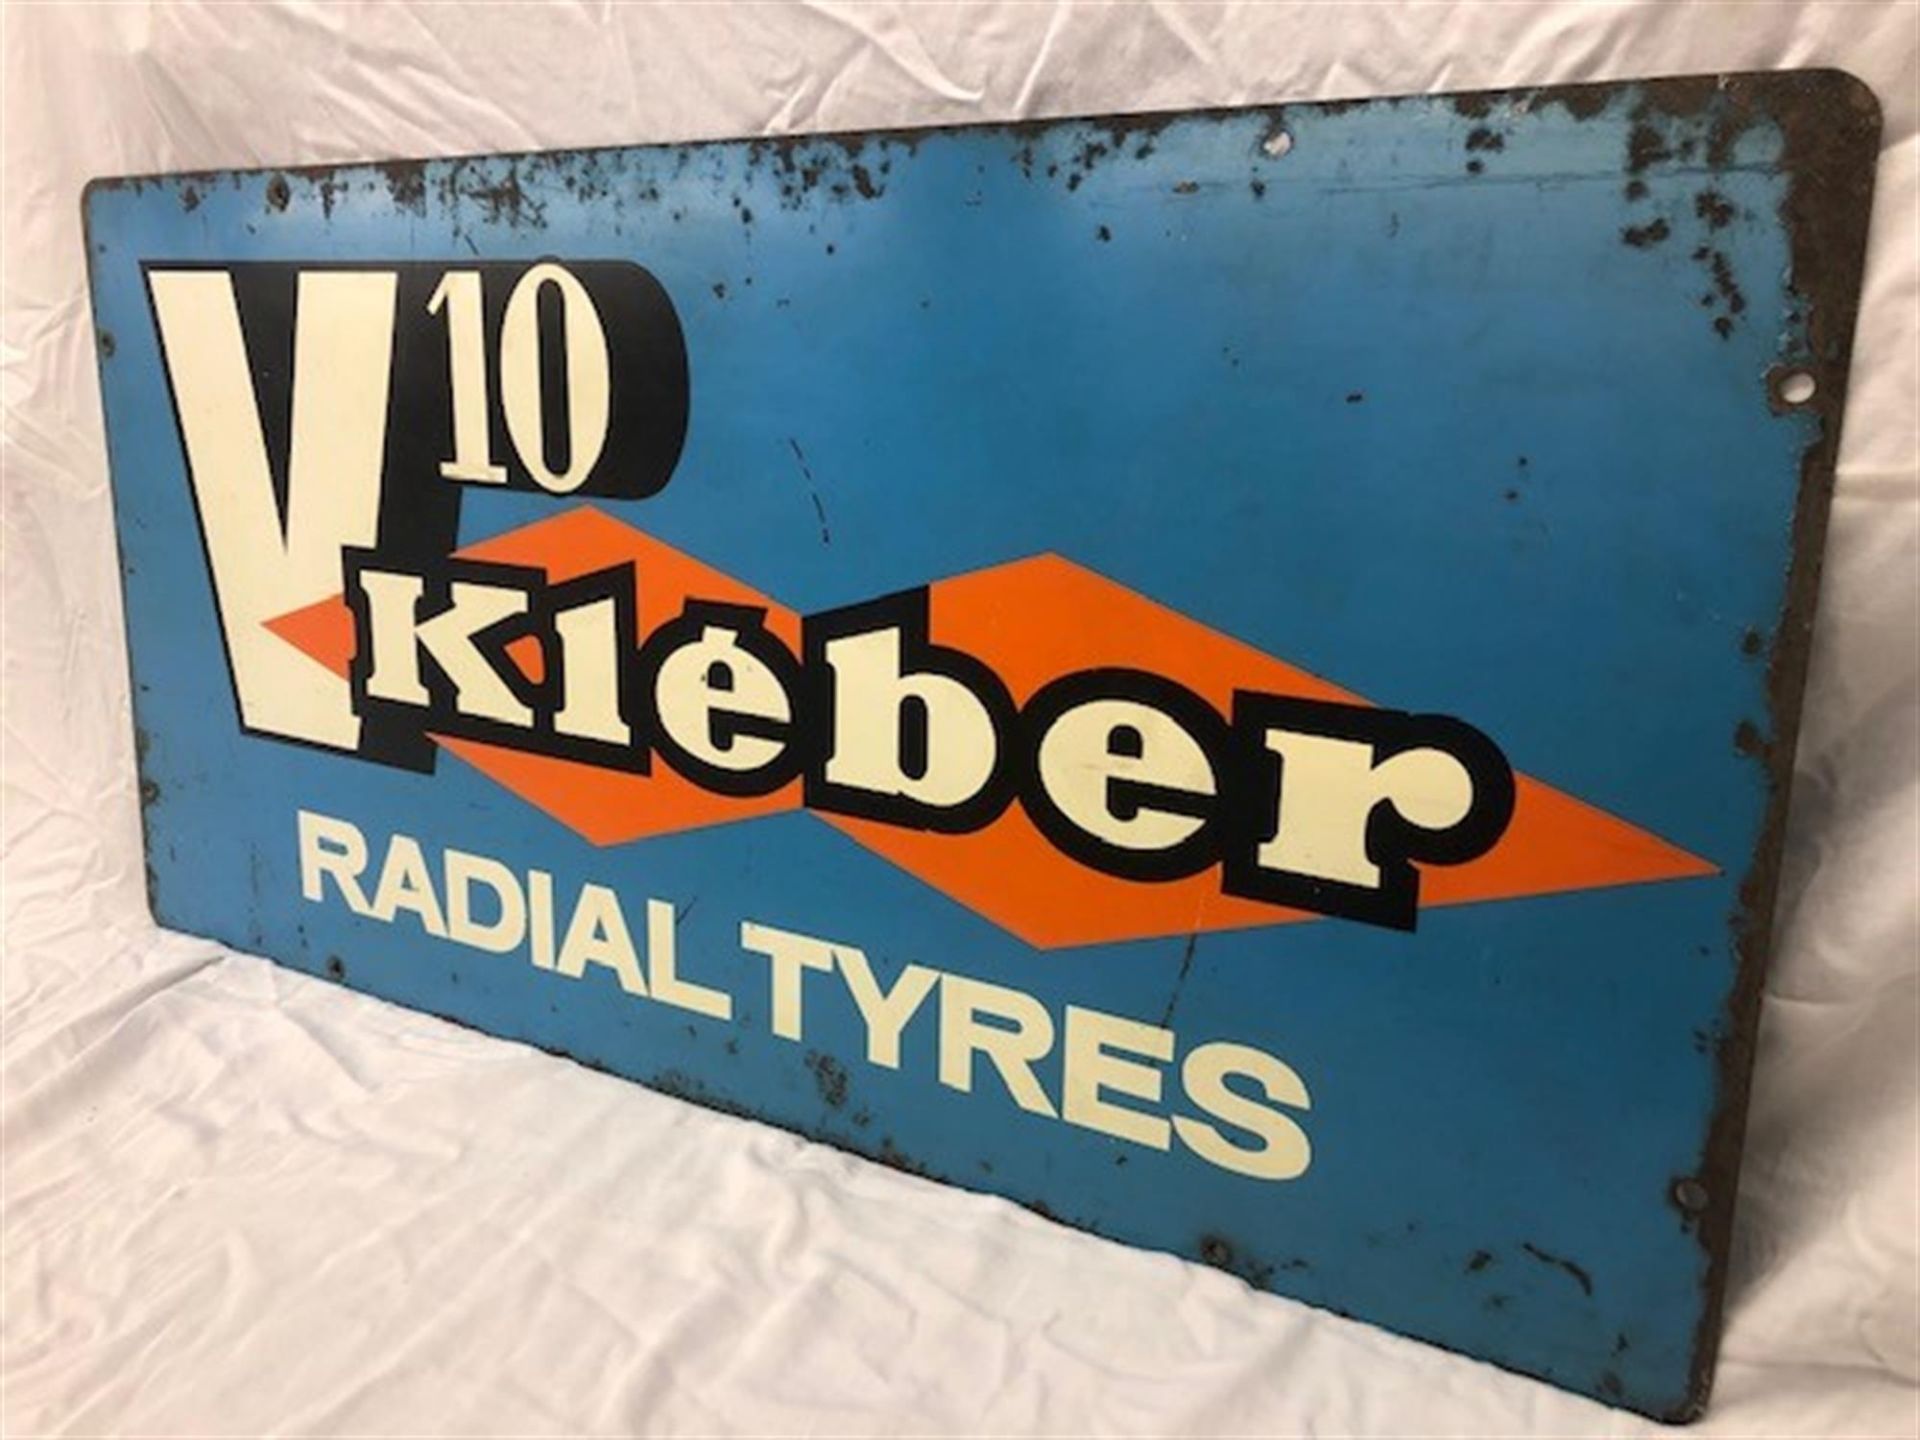 An Original Enamelled Metal Advertising Sign for V10 Kléber Radial Tyres - Image 3 of 4